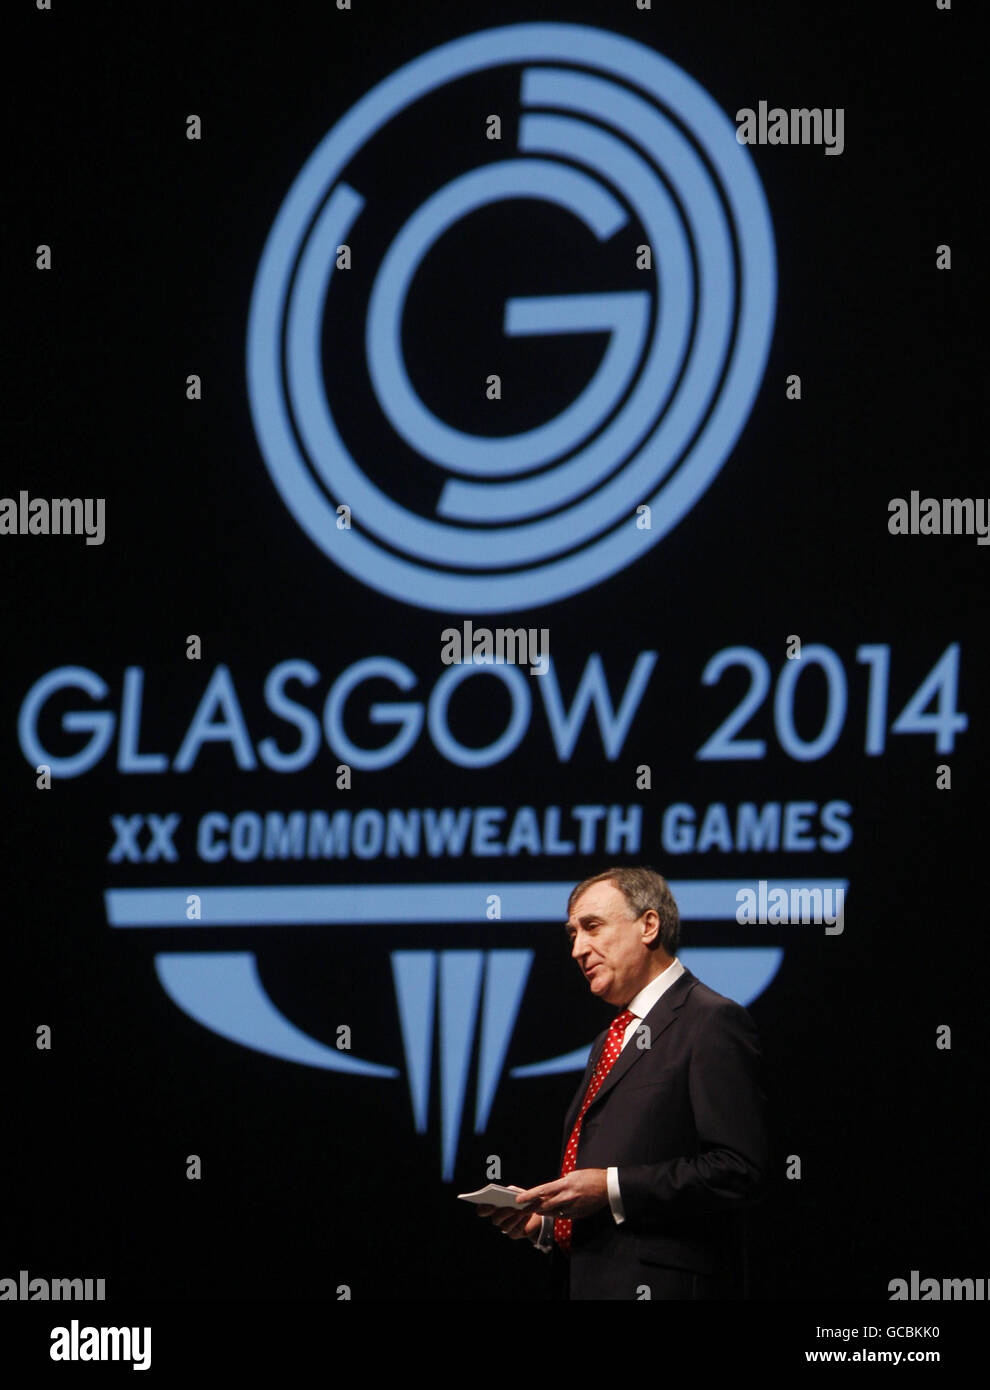 Le chef de la direction du comité organisateur de Glasgow 2014, John Scott, prononce un discours devant le nouveau logo des Jeux du Commonwealth de Glasgow 2014 lors de son lancement au Clyde Auditorium de Glasgow. Banque D'Images